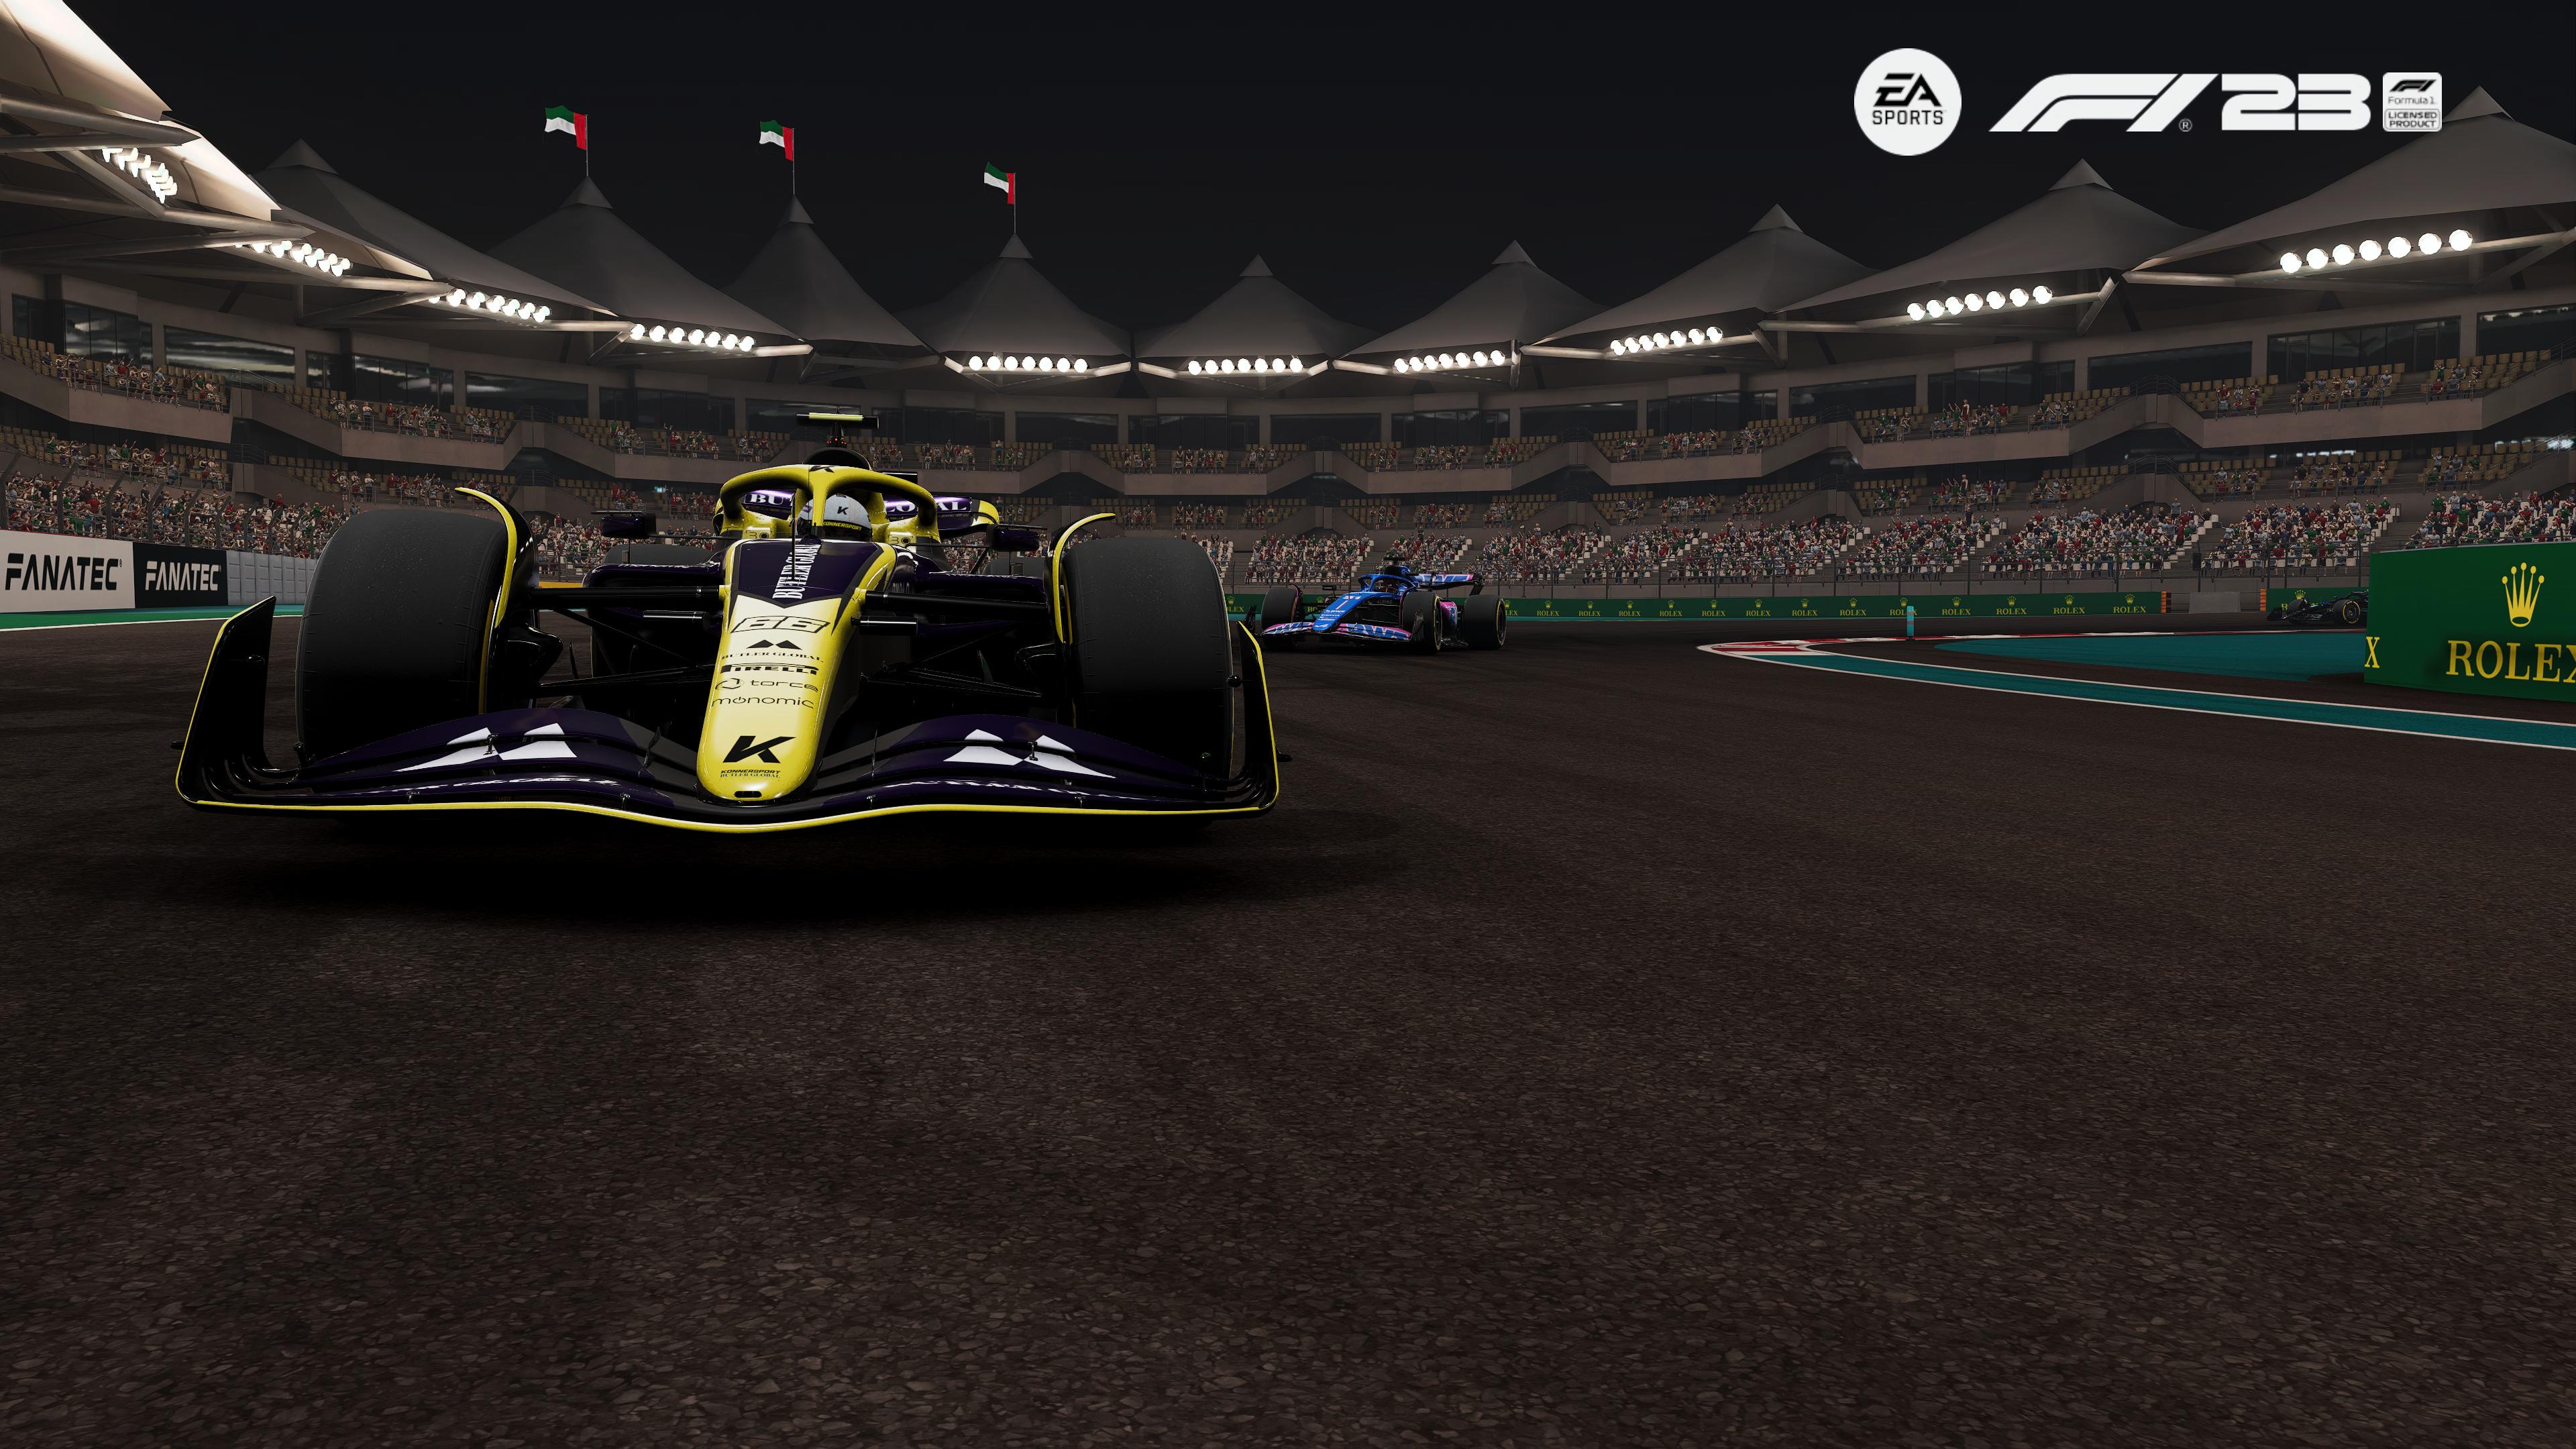 Reseña: EA Sports F1 23, el mejor juego de Fórmula 1 que han hecho 33